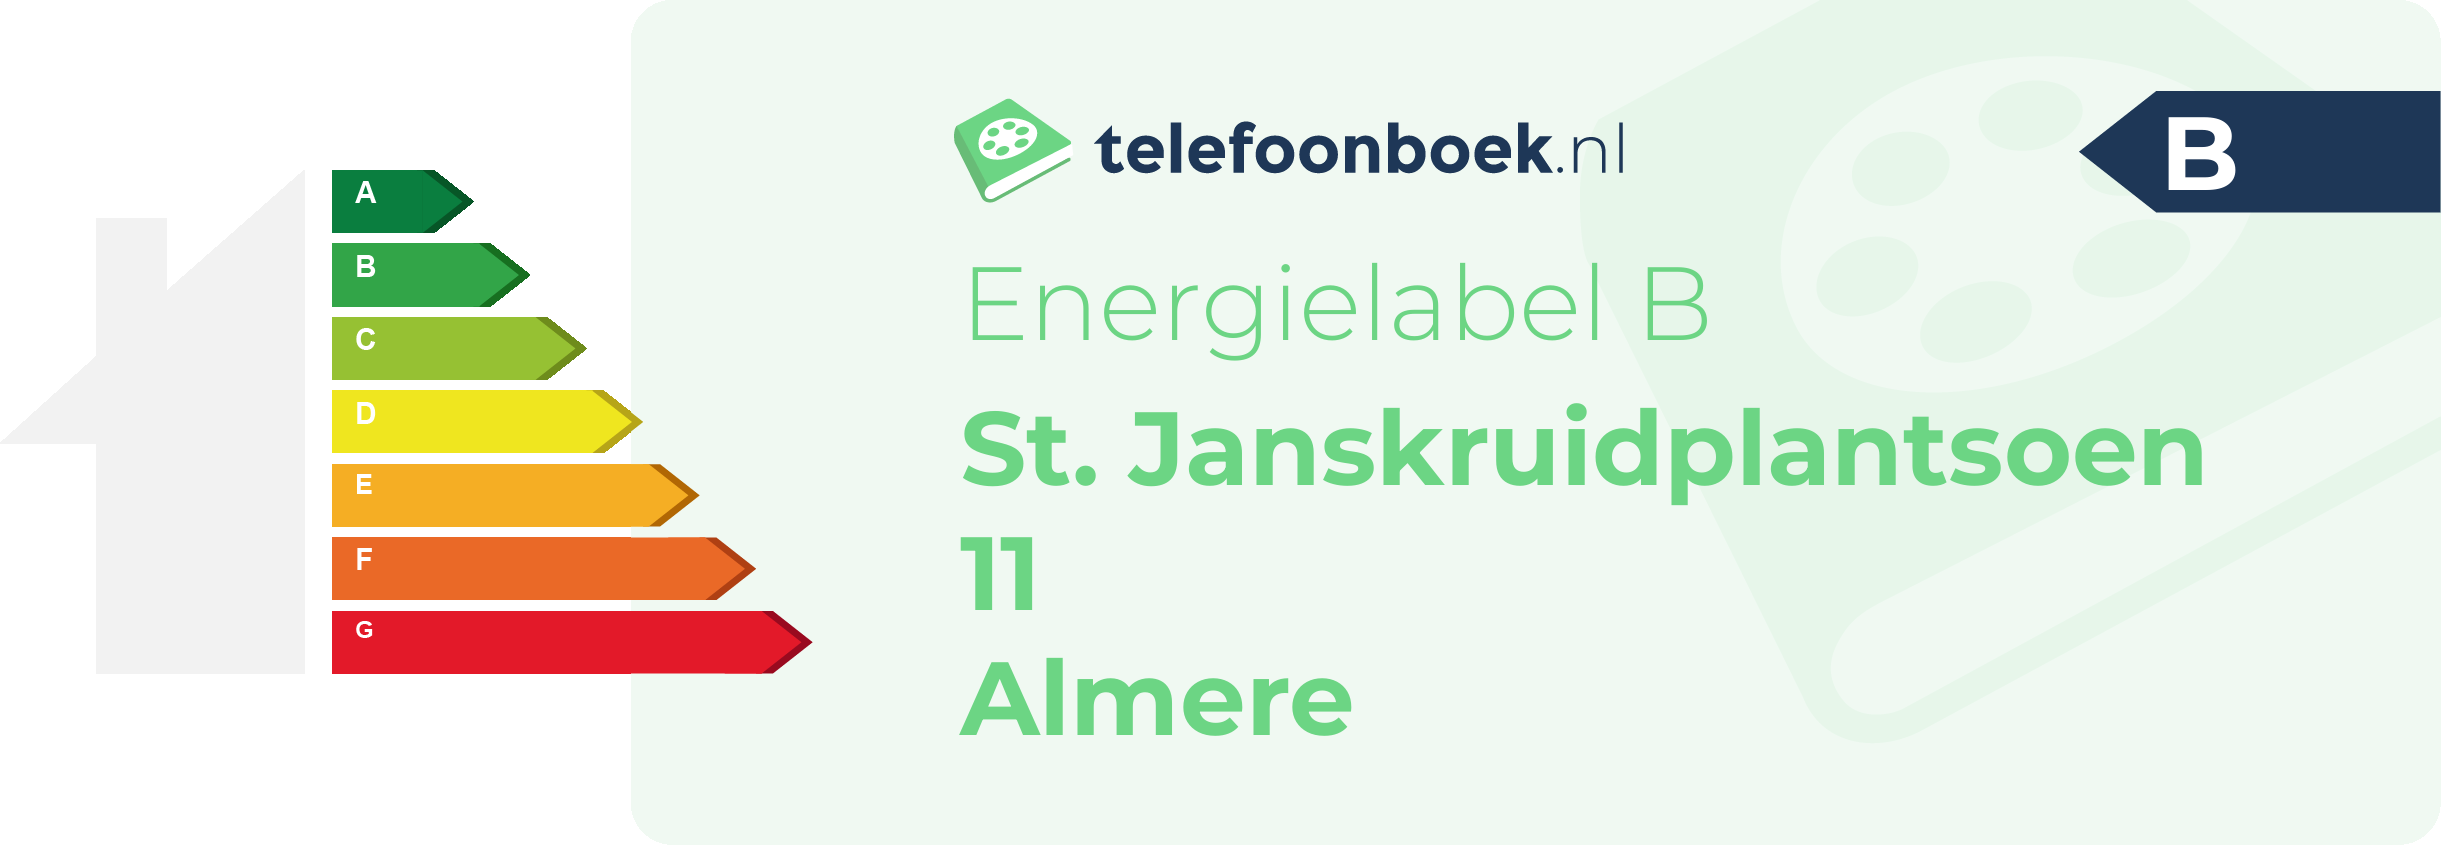 Energielabel St. Janskruidplantsoen 11 Almere